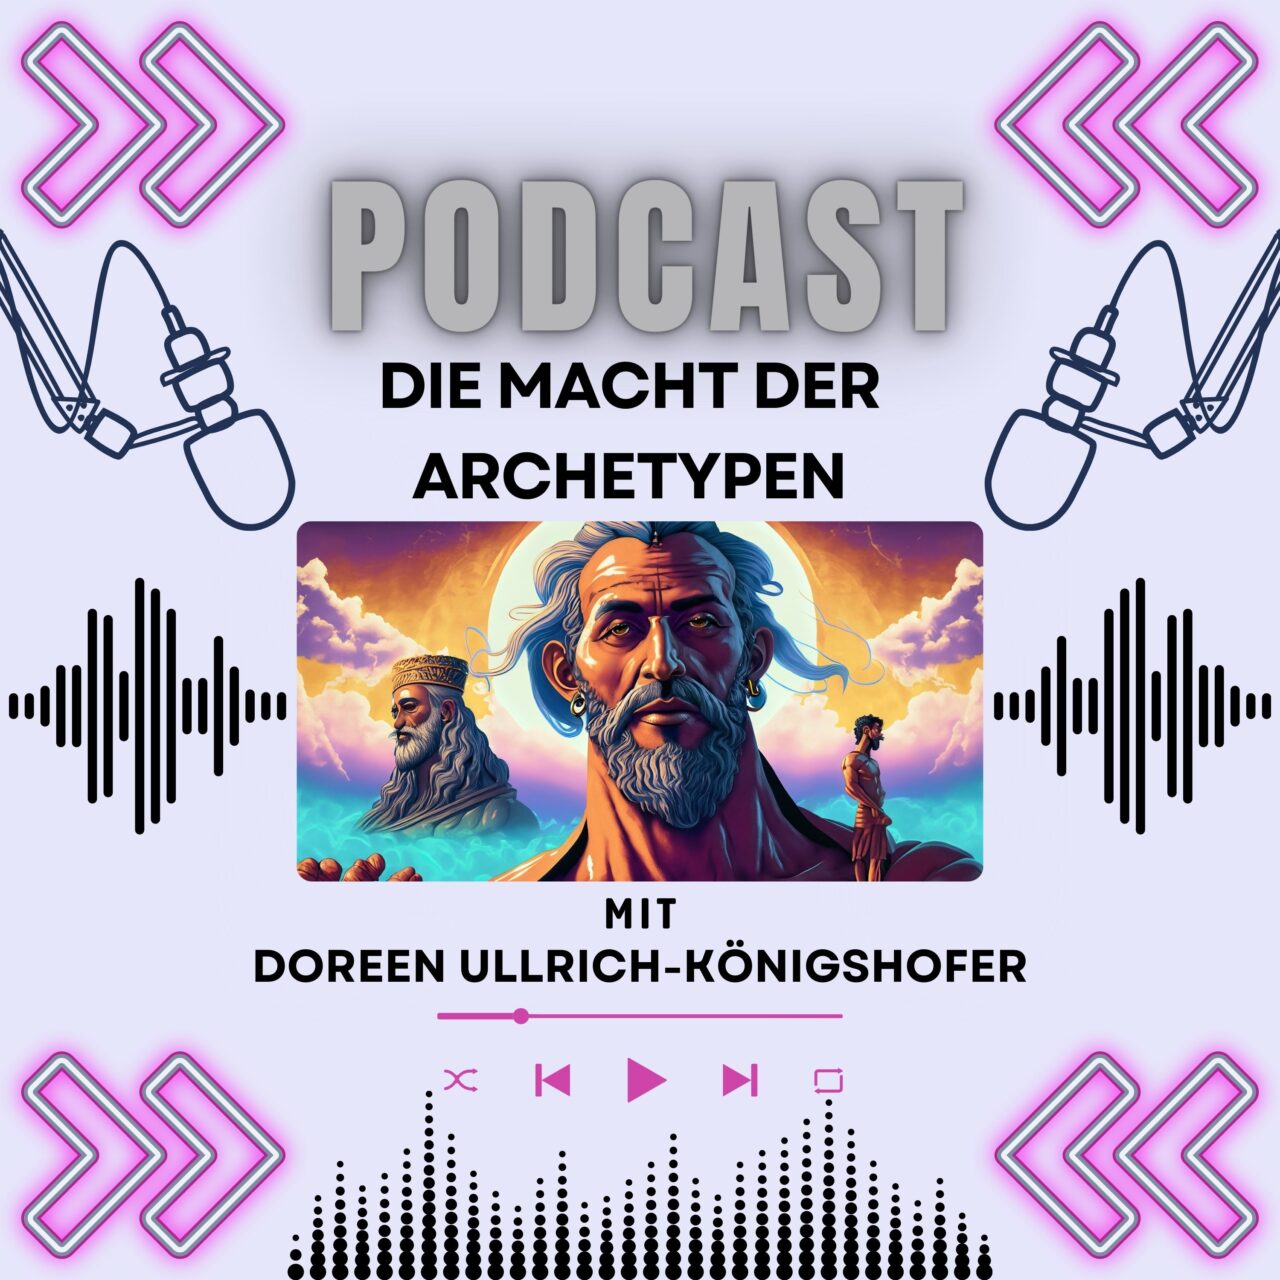 Podcasts Doreen Ullrich, die Macht der Archetypen, Social Media Post Beispiel